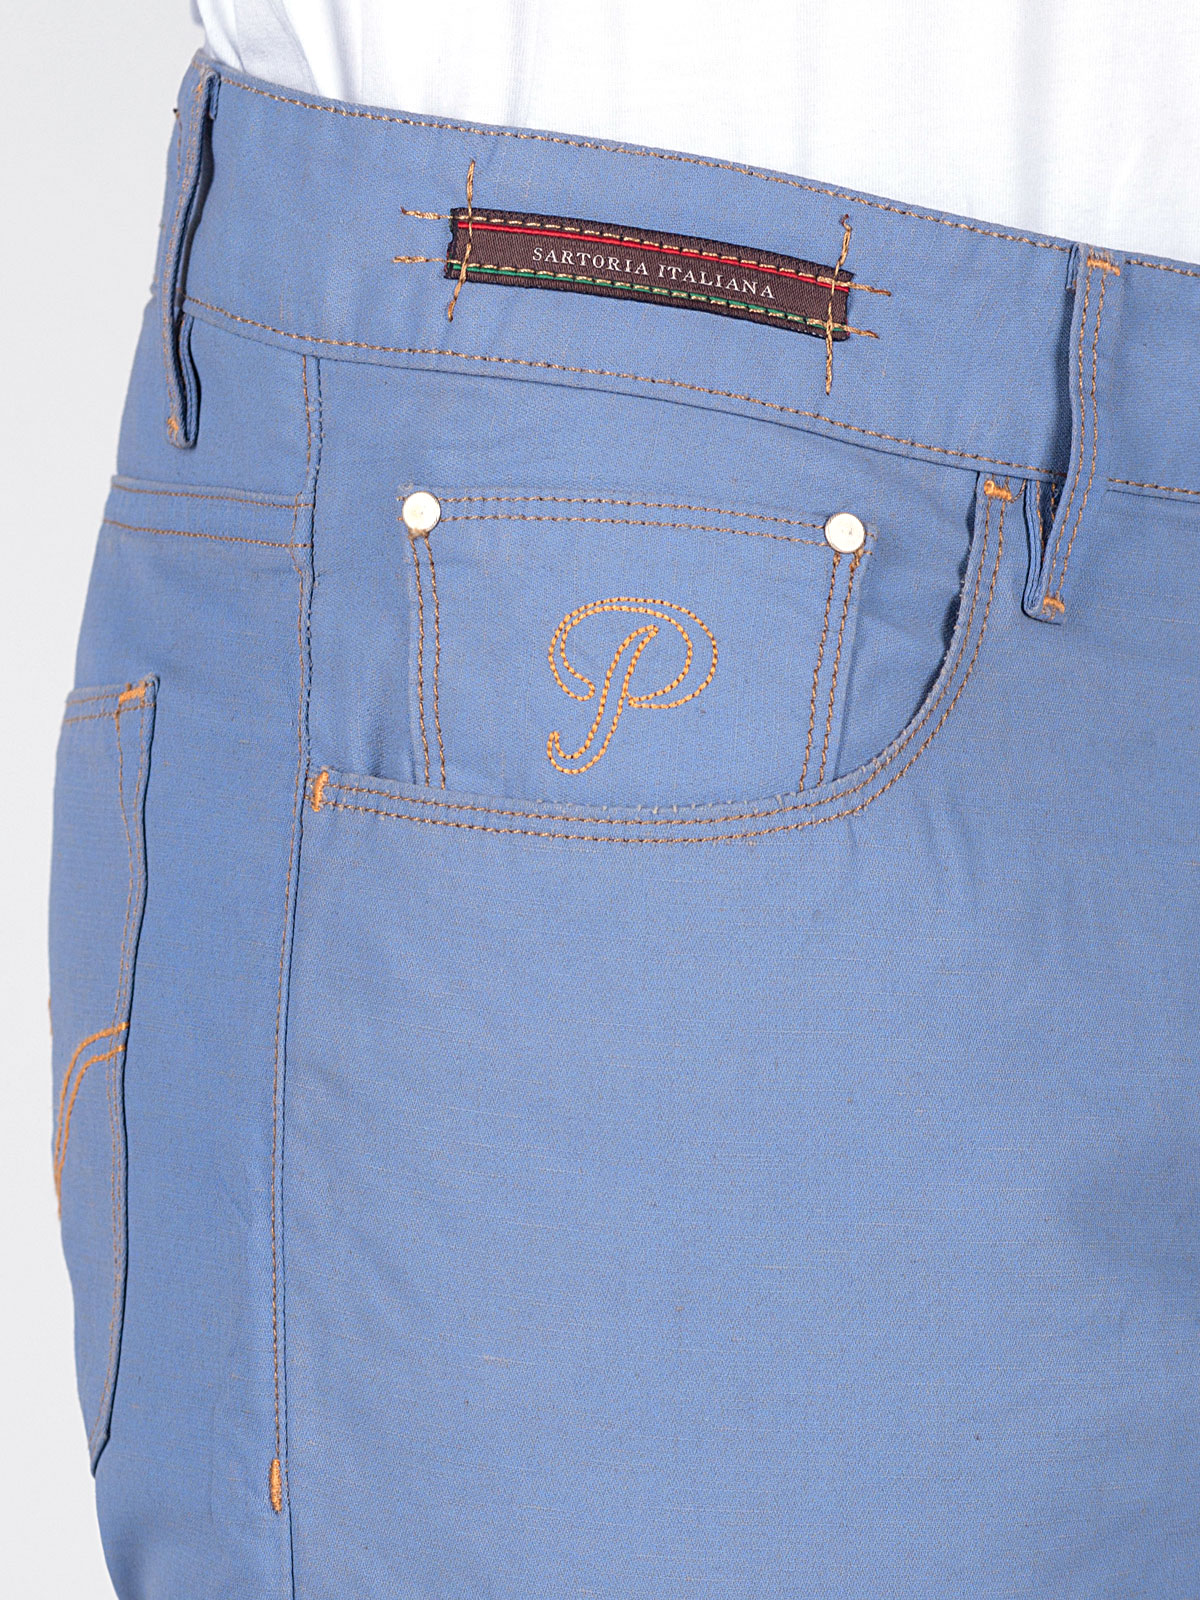 Κοντό παντελόνι σε γαλάζιο - 67003 € 11.25 img2